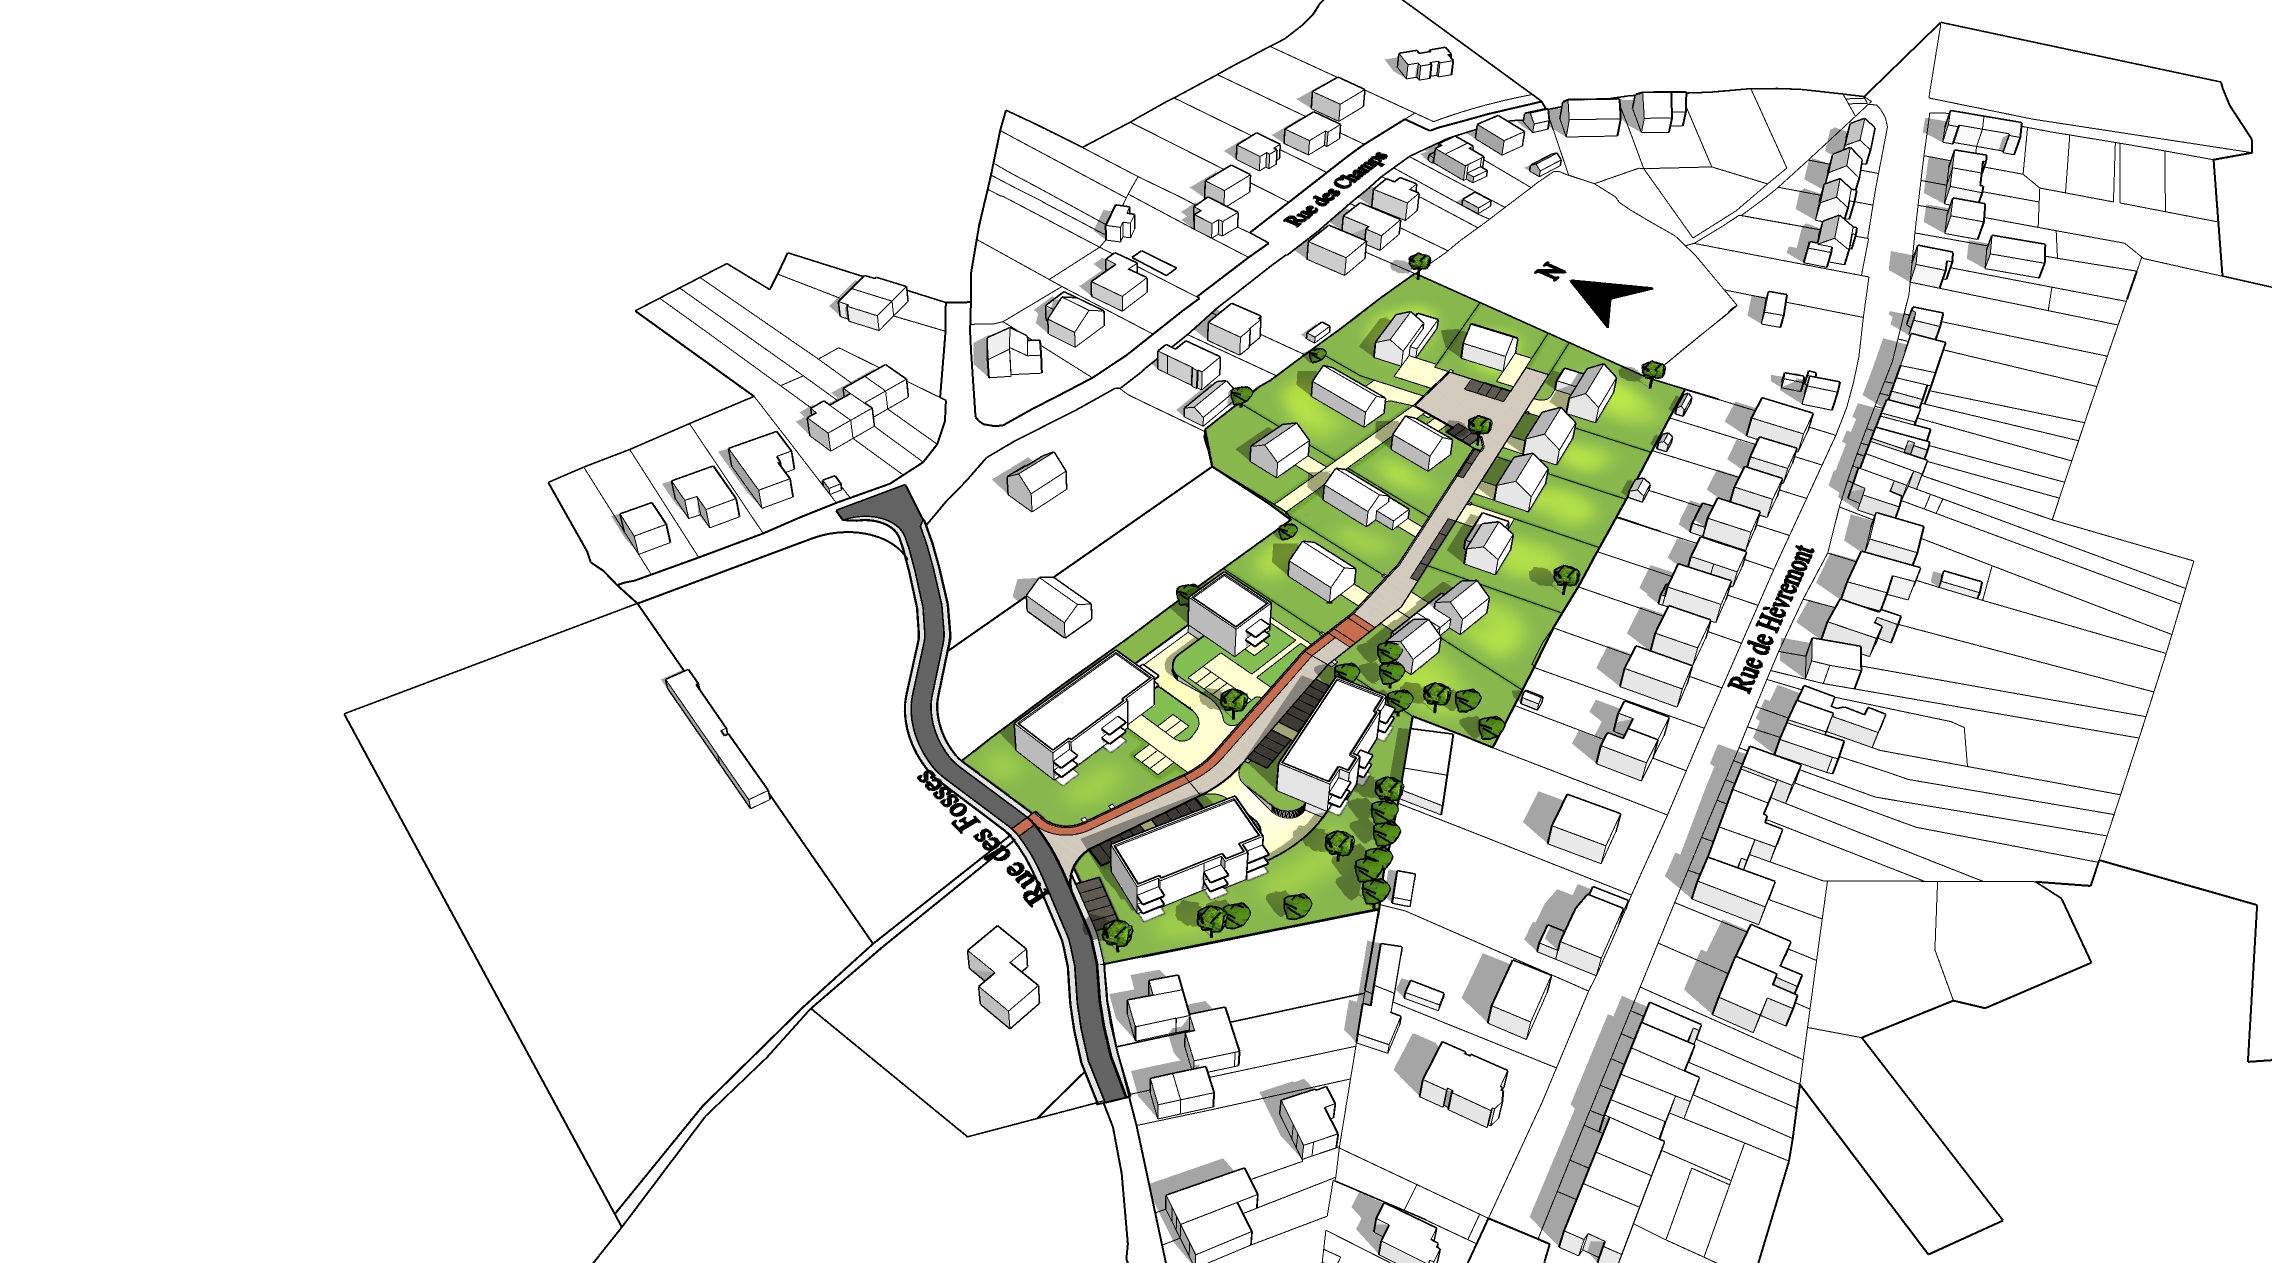 Plan des options architecturales d'ensemble d'un projet d'urbanisation à Stembert